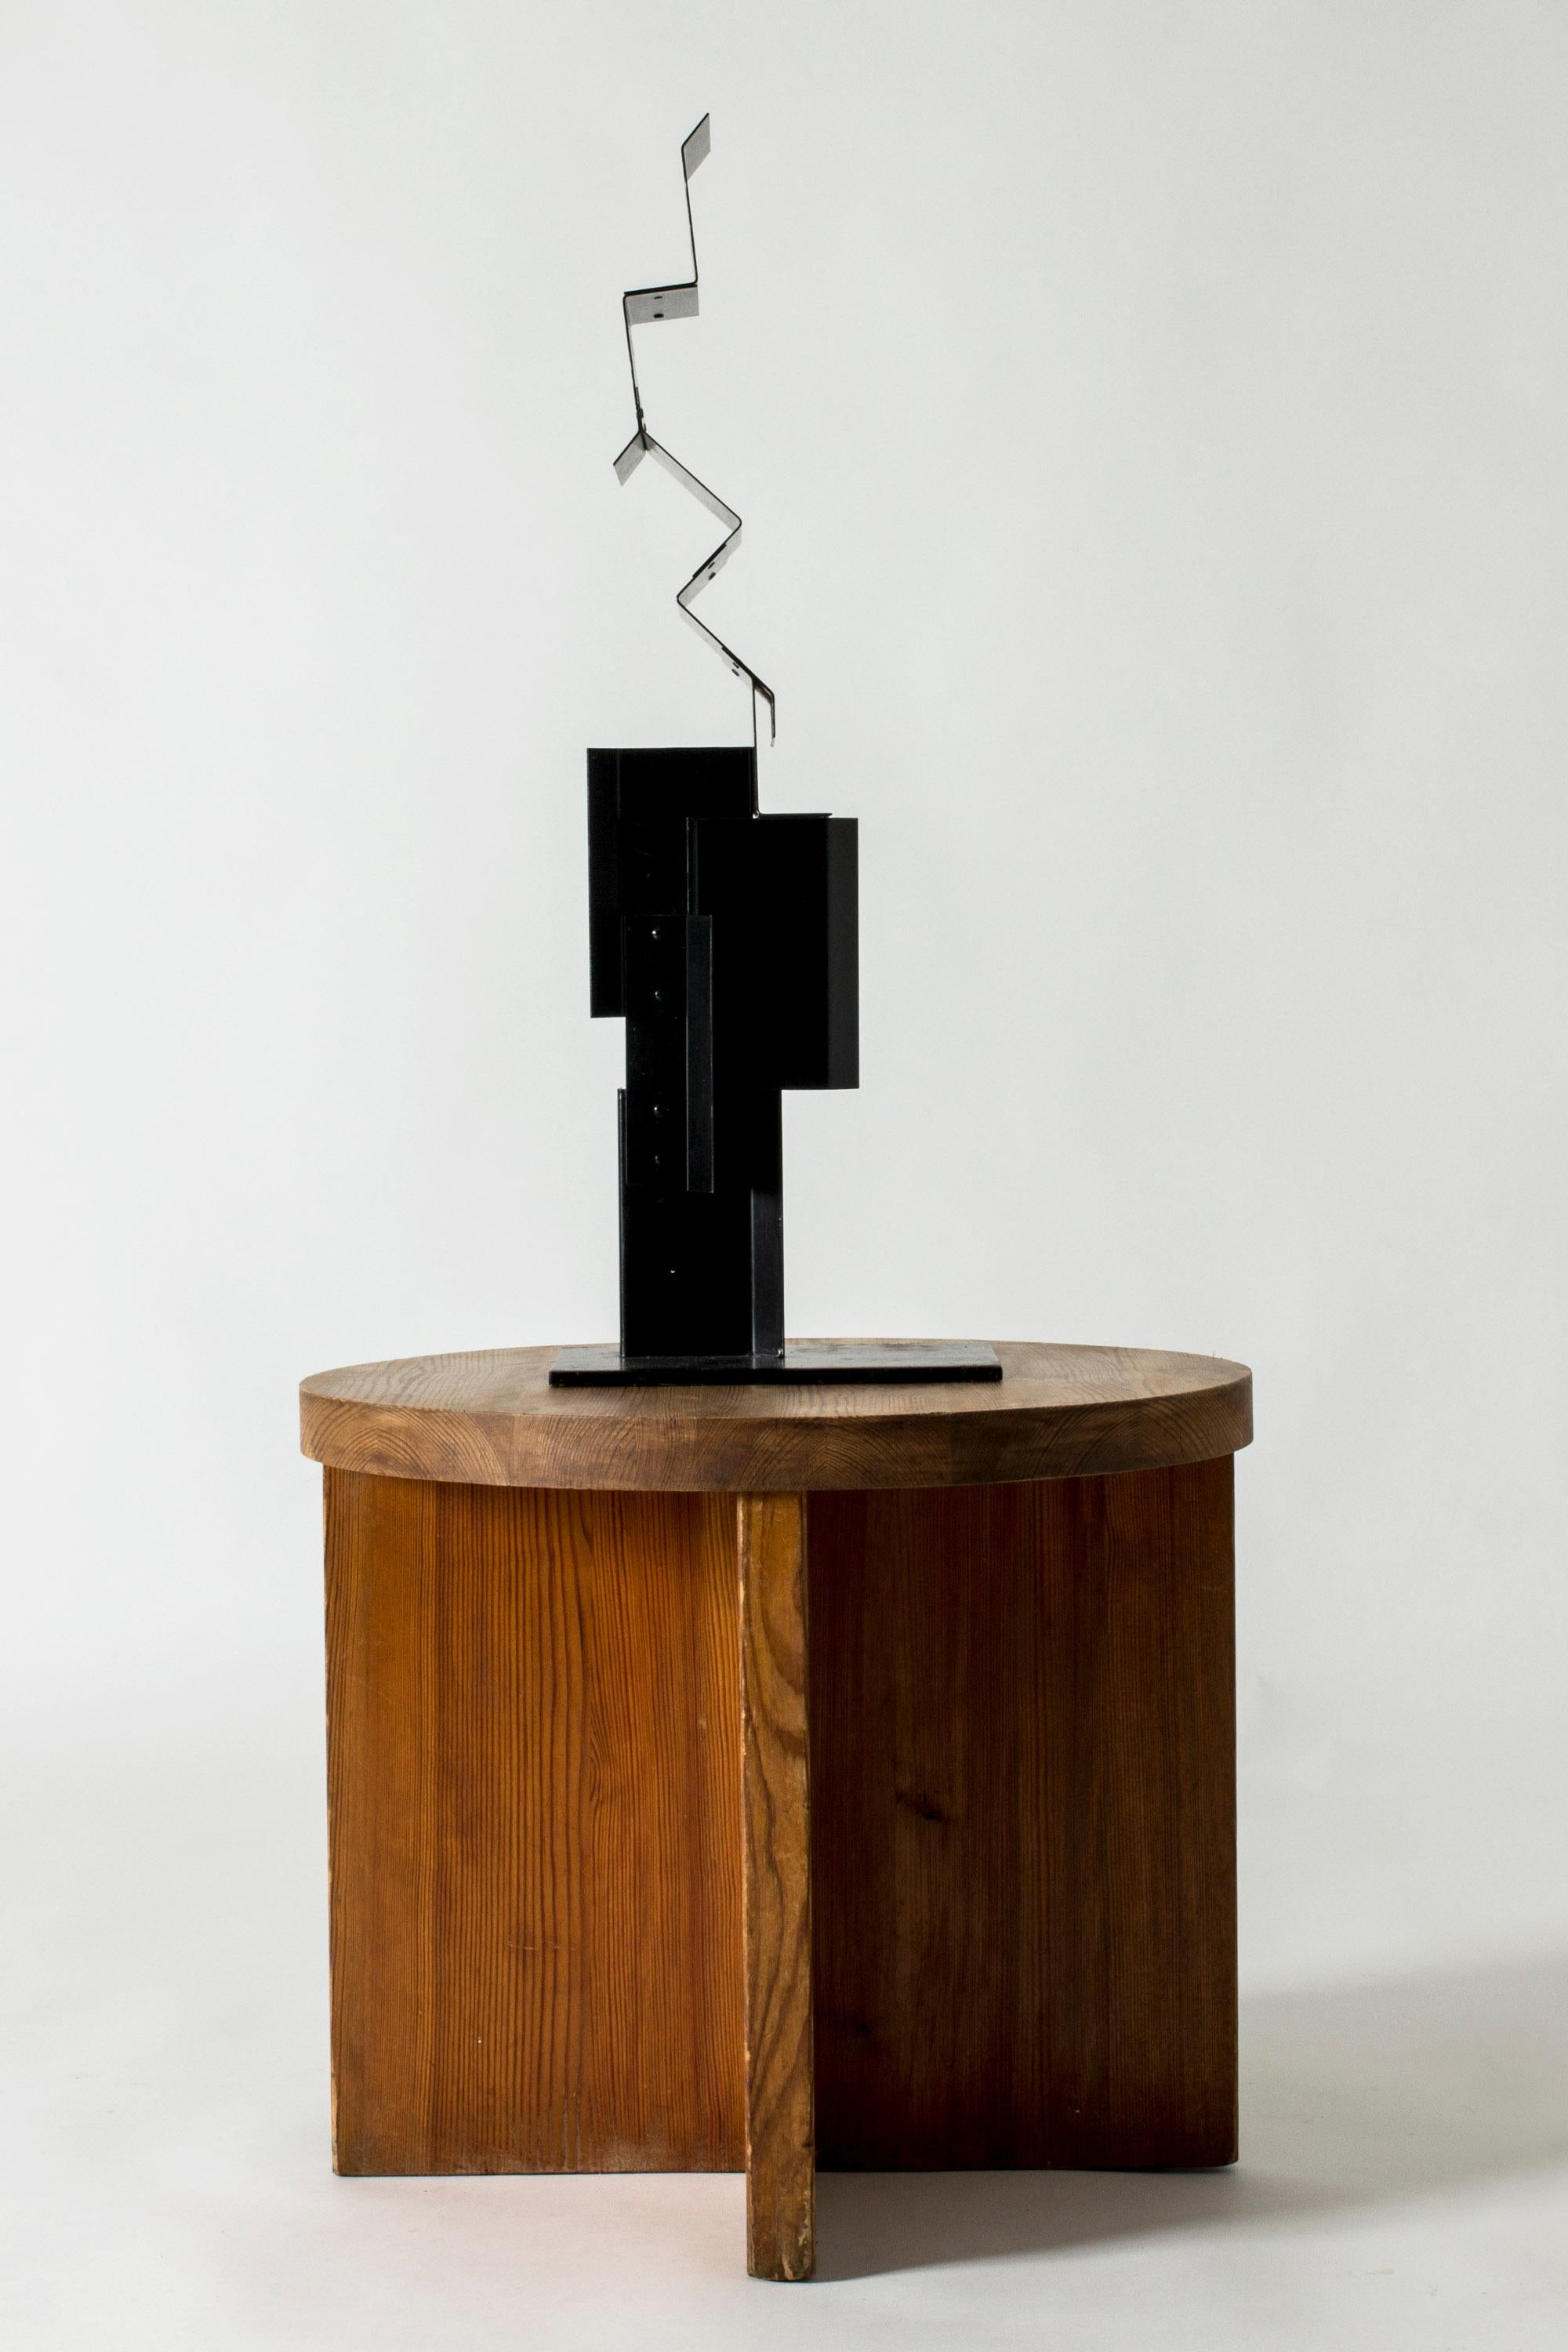 Remarquable sculpture de Lars Erik Falk, réalisée en métal laqué noir. Des angles intéressants, des perspectives différentes sous des angles différents. Nommé 